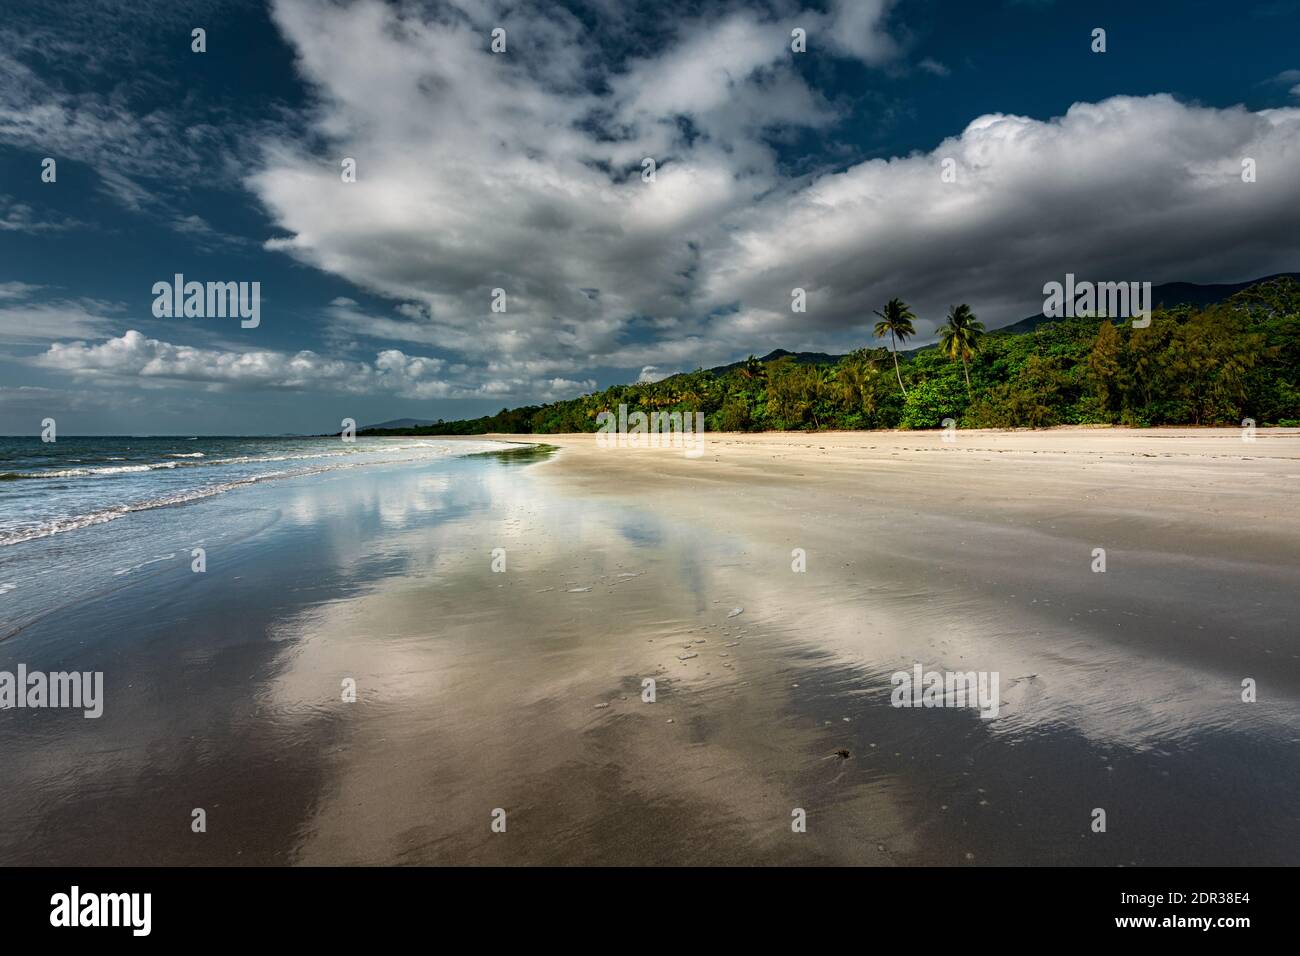 Schöner Myall Beach im Daintree National Park, Teil des zum Weltkulturerbe gehörenden Wet Tropics. Stockfoto